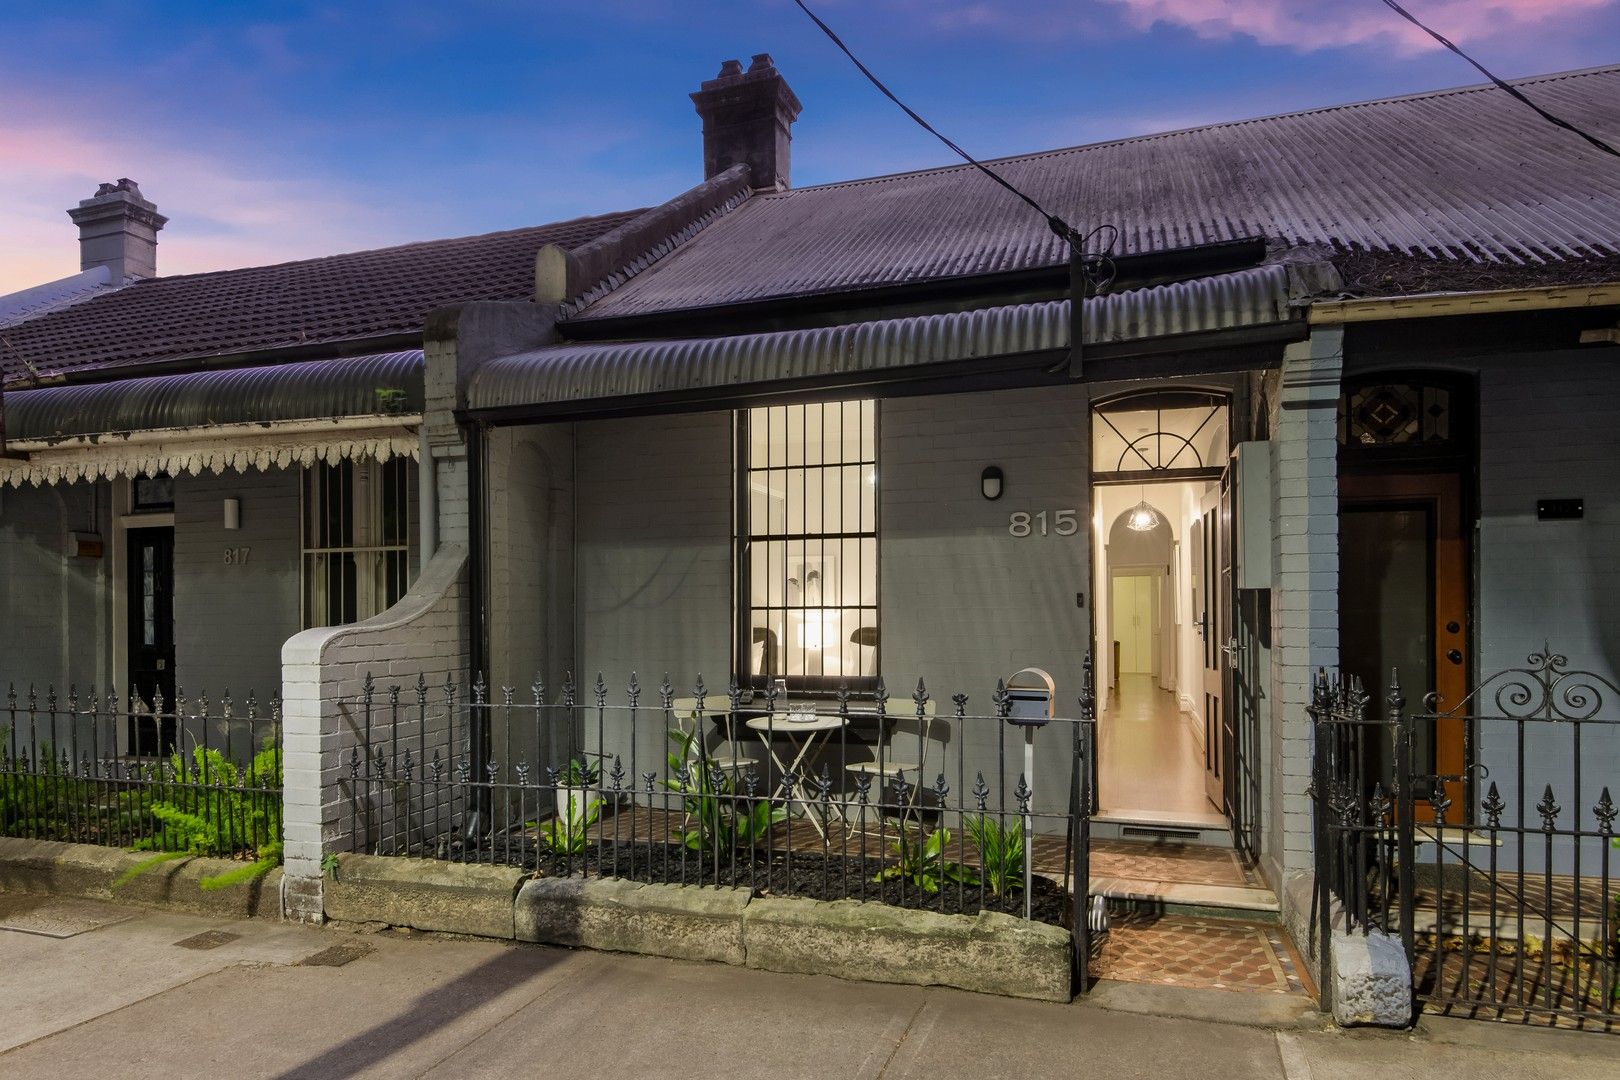 3 bedrooms House in 815 Bourke Street REDFERN NSW, 2016